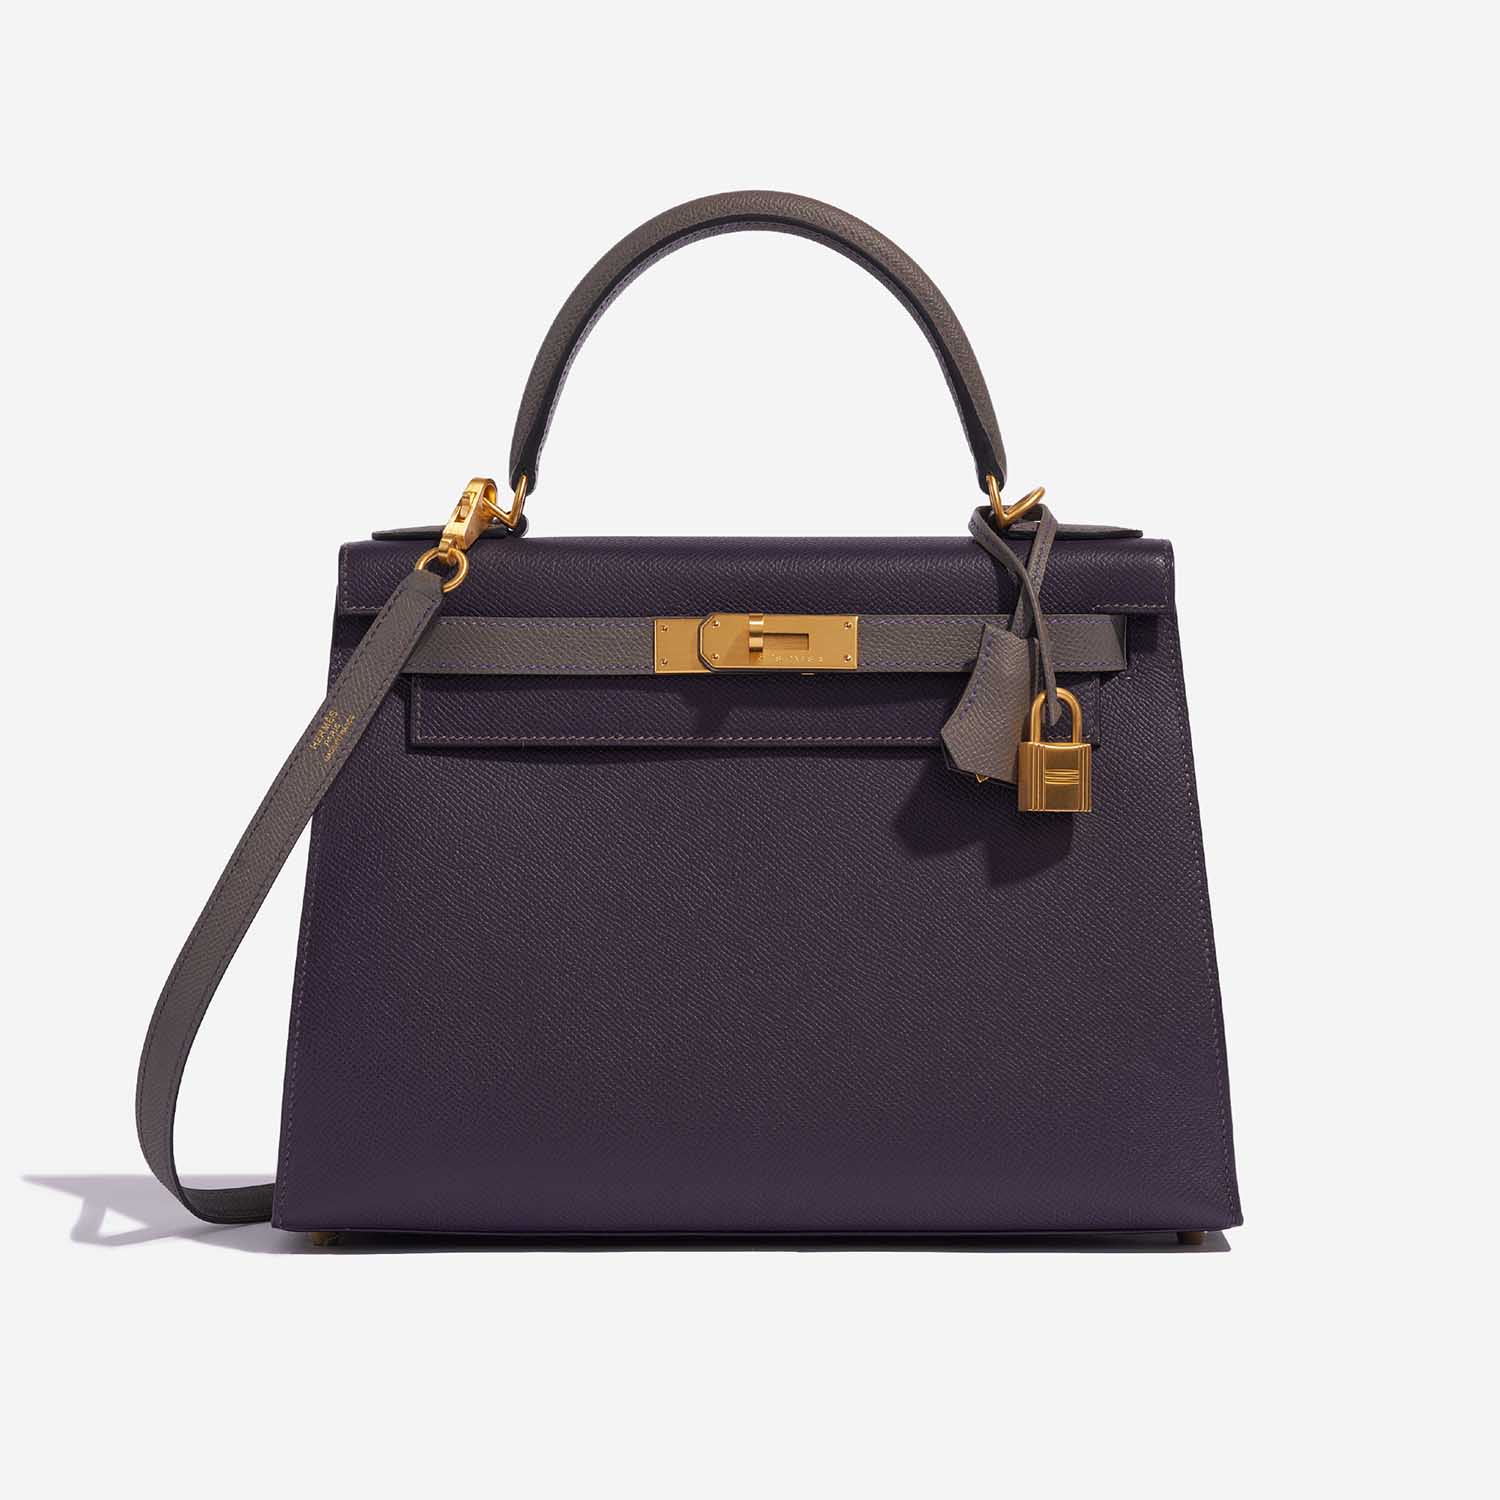 Pre-owned Hermès Tasche Kelly HSS 28 Epsom Raisin / Gris Etain Grey Front | Verkaufen Sie Ihre Designer-Tasche auf Saclab.com